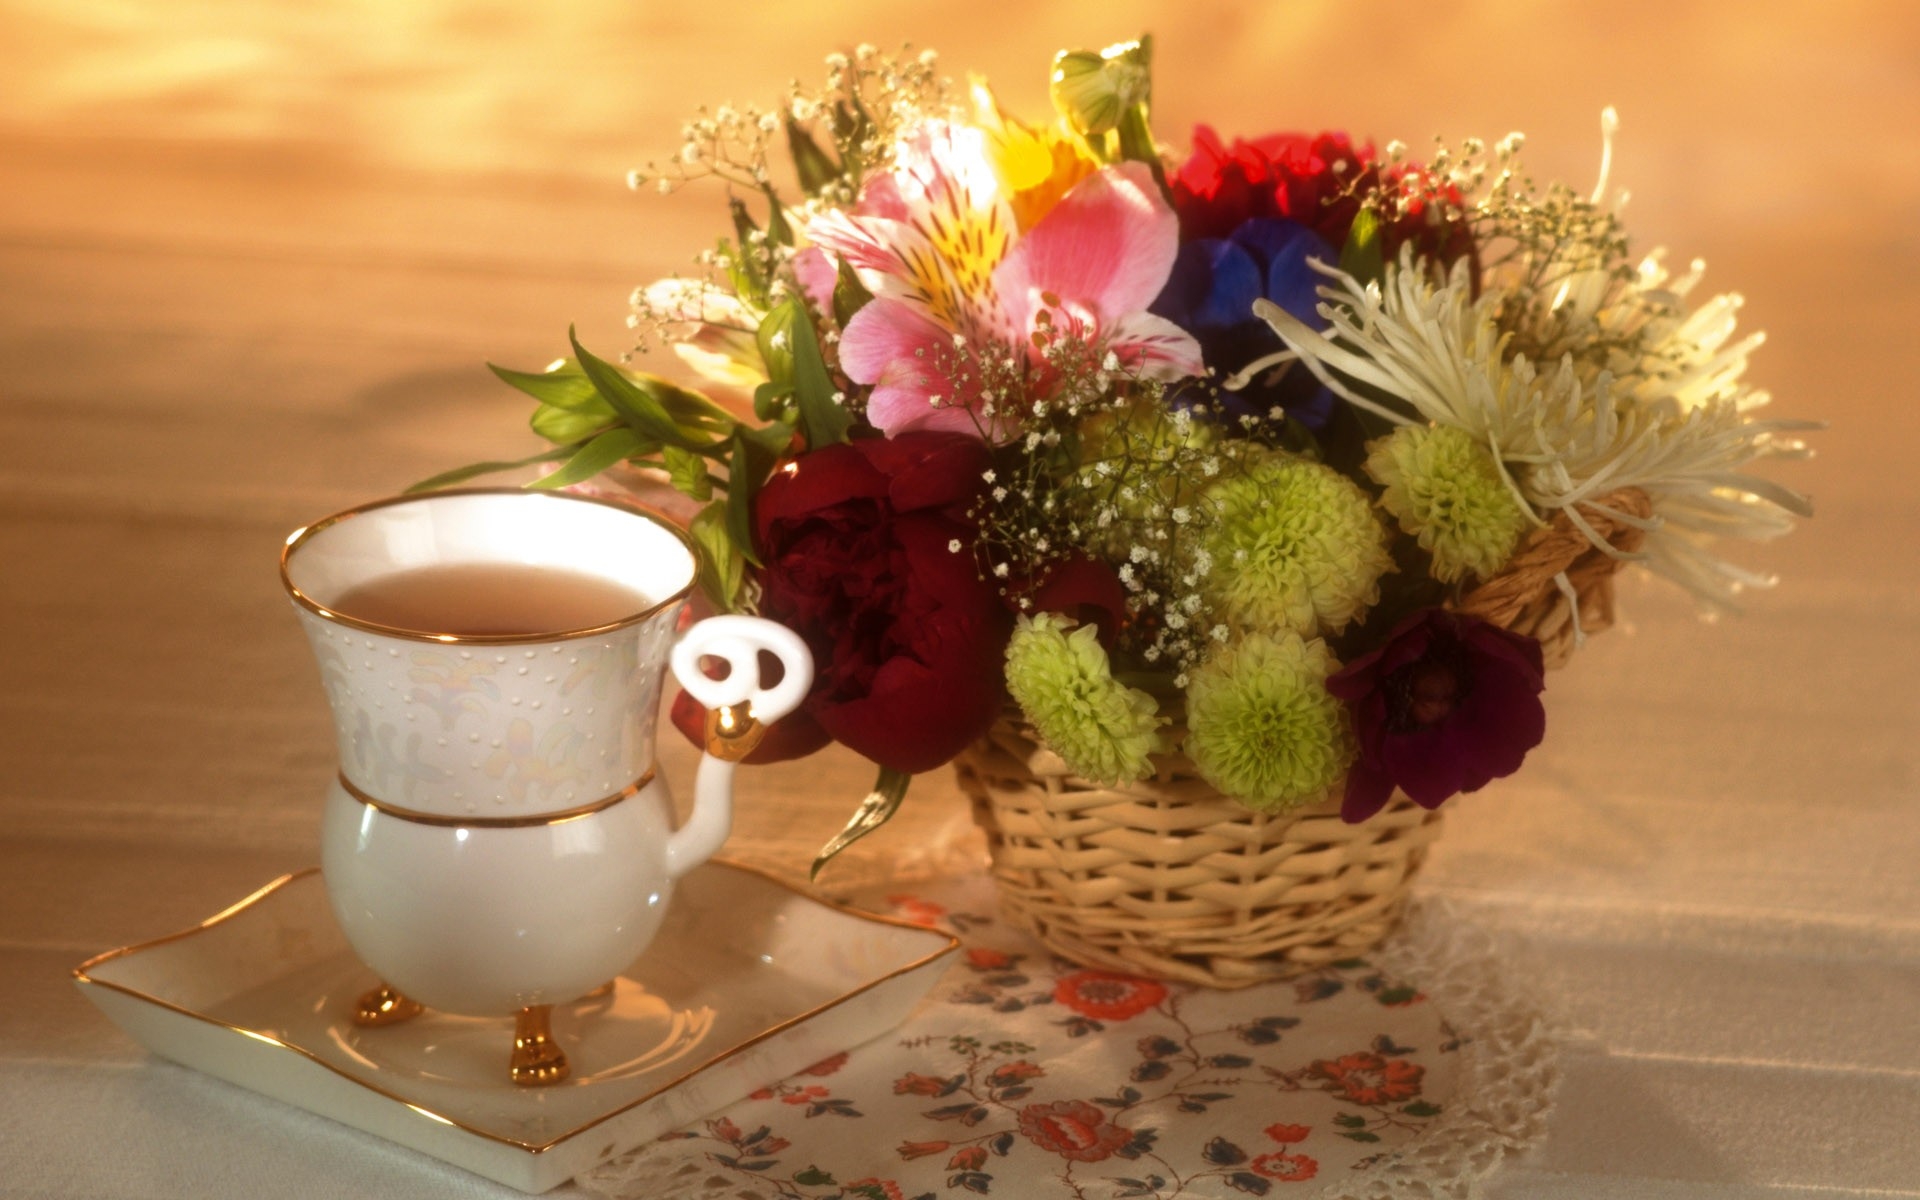 Картинки Пионы, лилии, хризантемы, цветы, цветок, чай, ткань фото и обои на рабочий стол